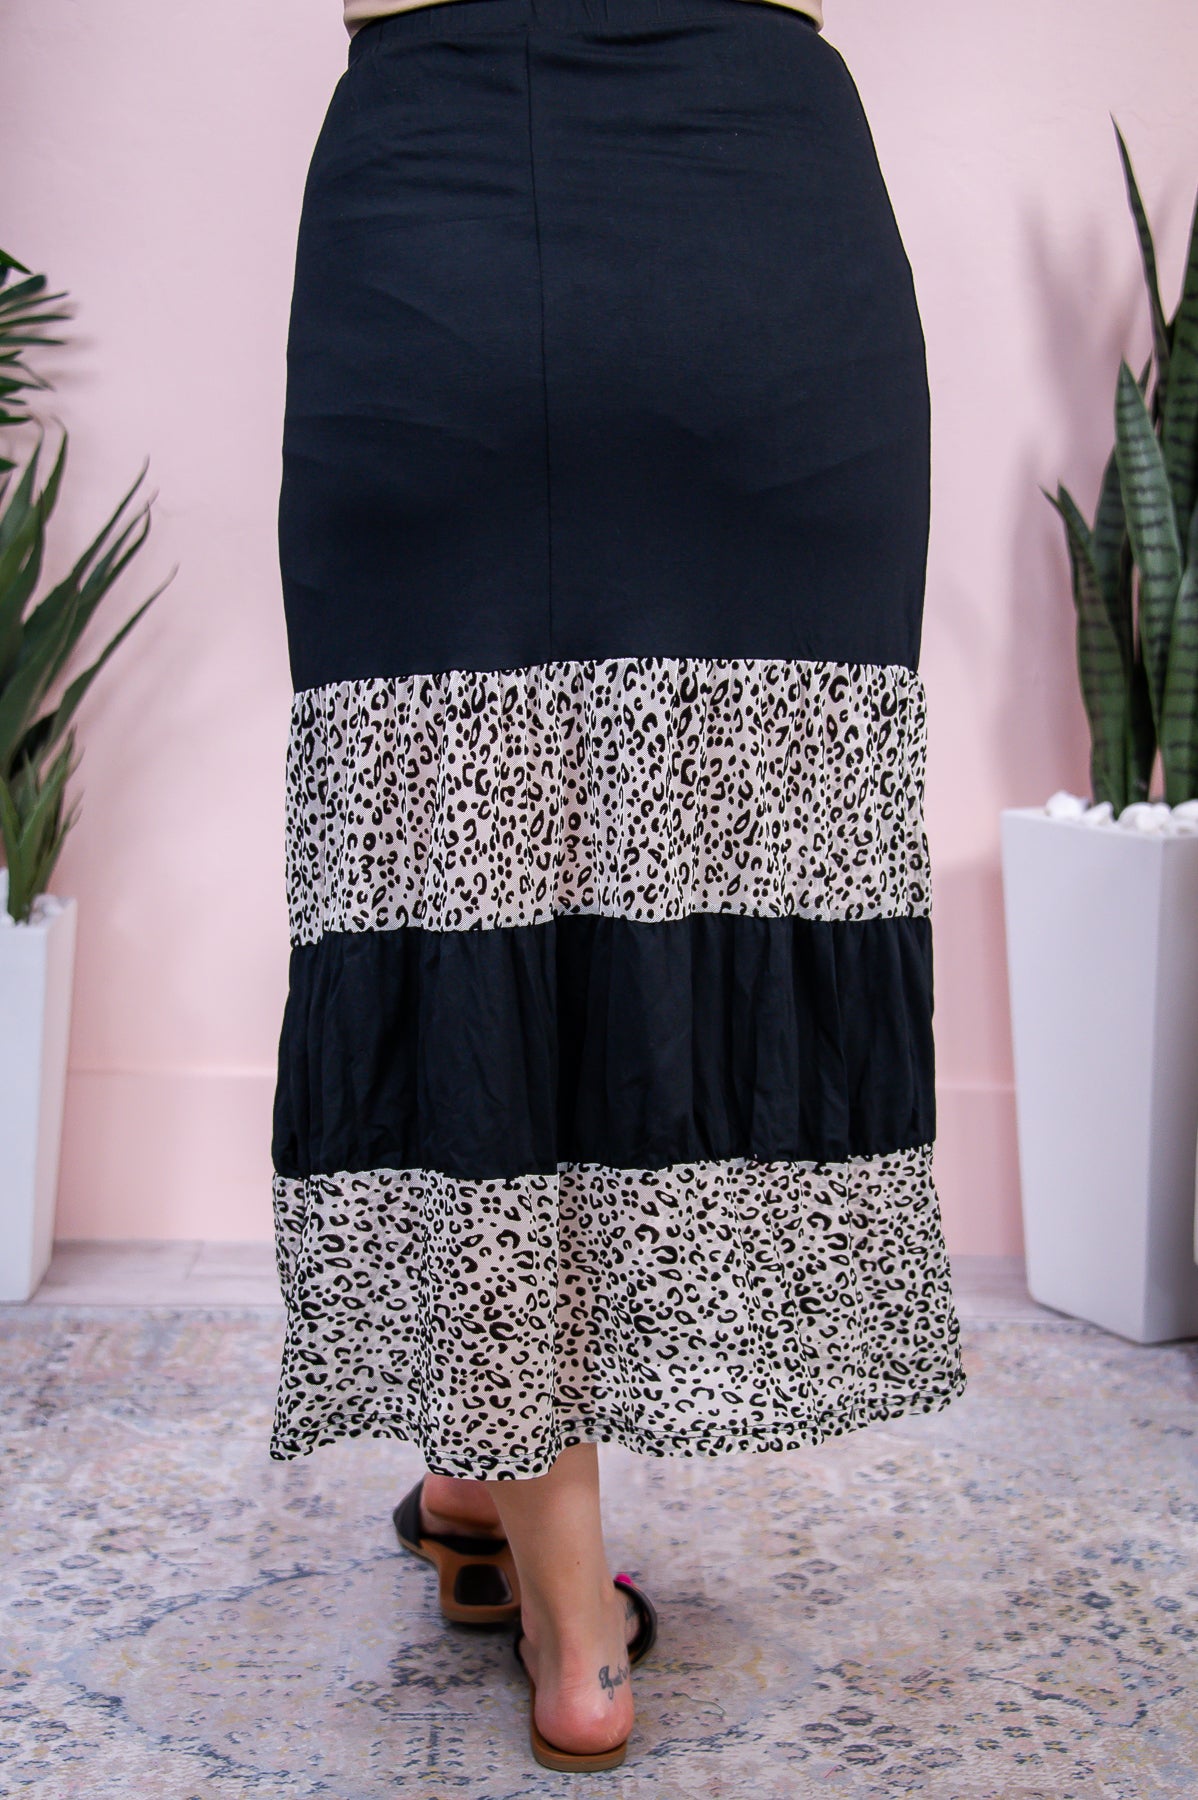 Free Spirit, Wild Heart Black/Cream Printed Skirt - E1134BK